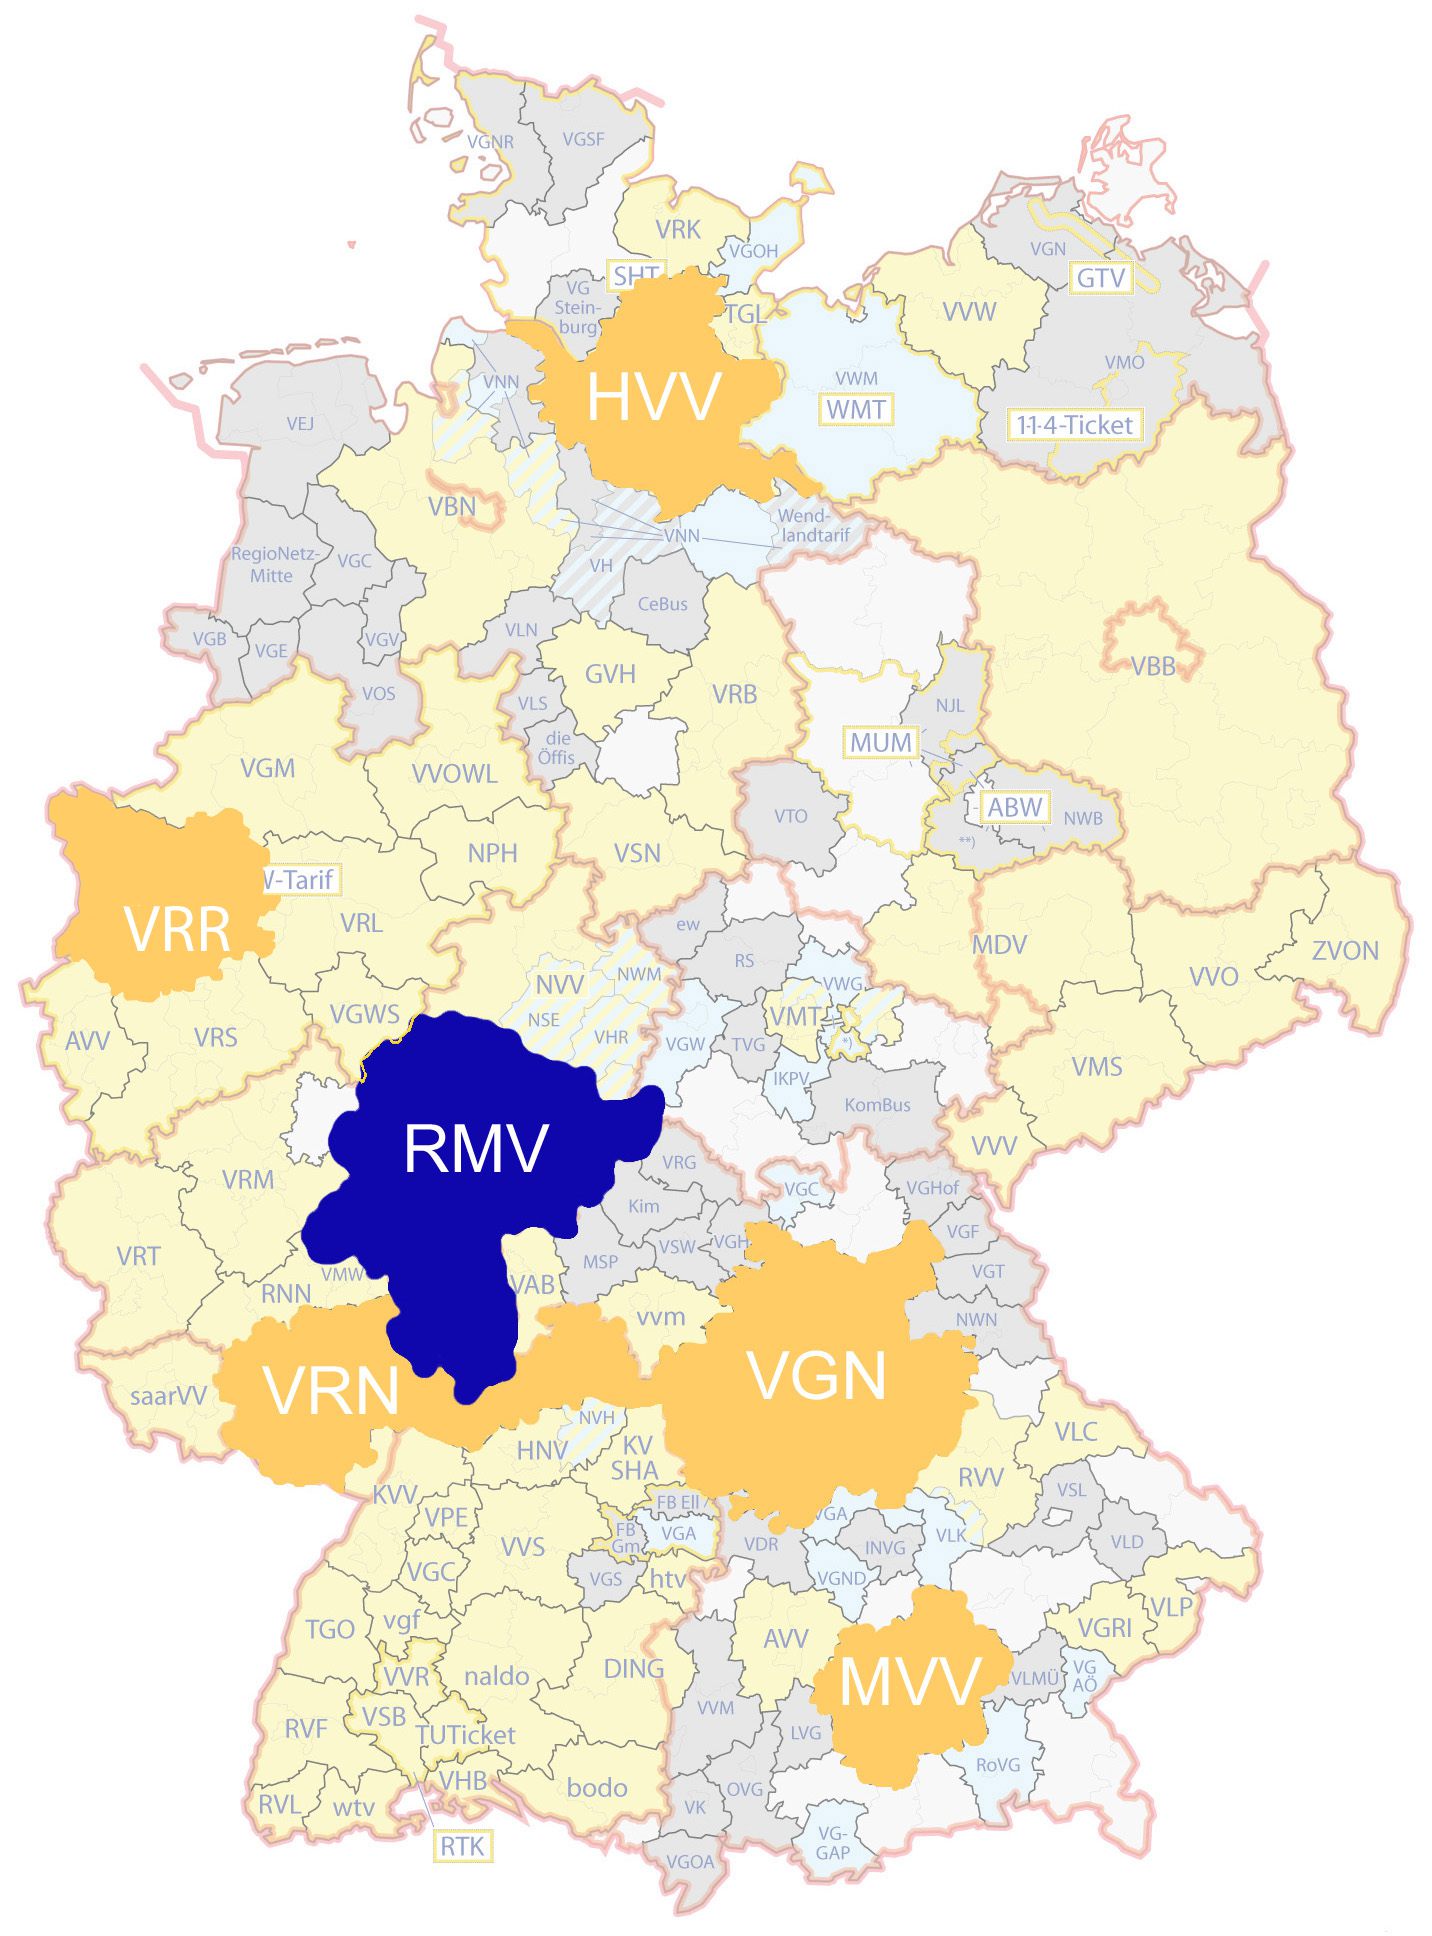 Verglichen wurden: Rhein-Main-Verkehrsverbund (RMV) Hamburger Verkehrsverbund (HVV) Verkehrsverbund Großraum